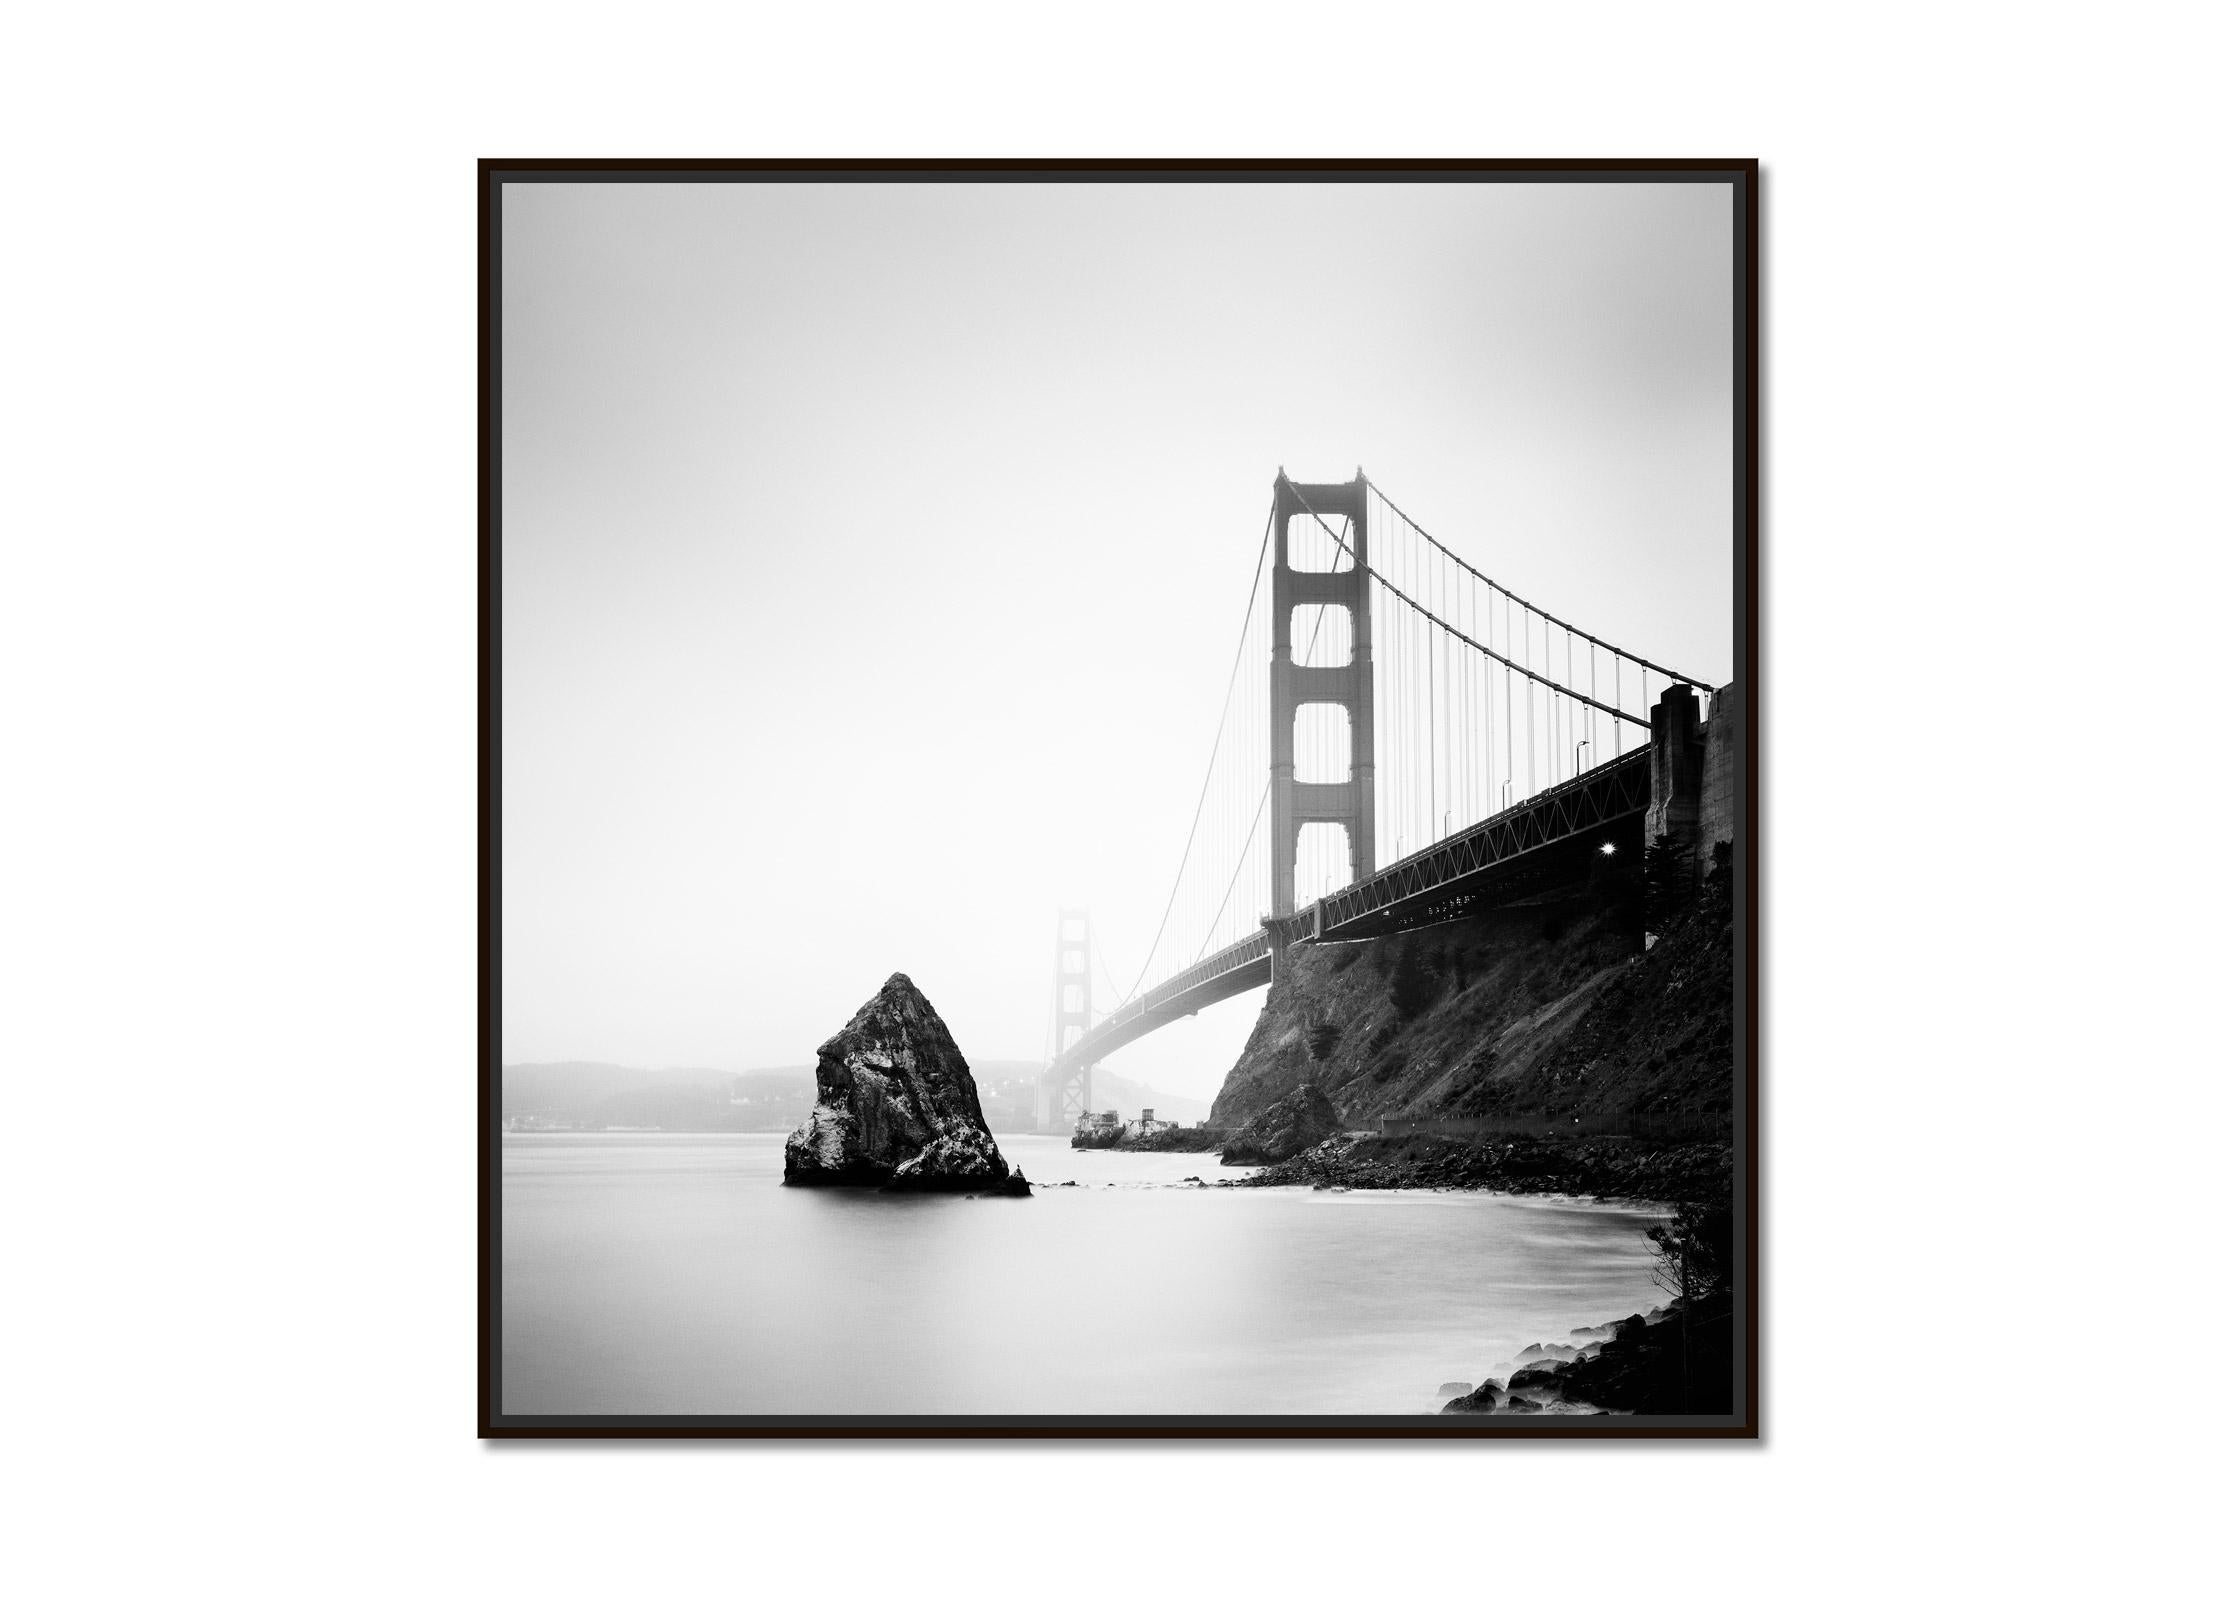 Golden Gate Bridge, fort point rock, San Francisco, b&w Landschaftsfotografie – Photograph von Gerald Berghammer